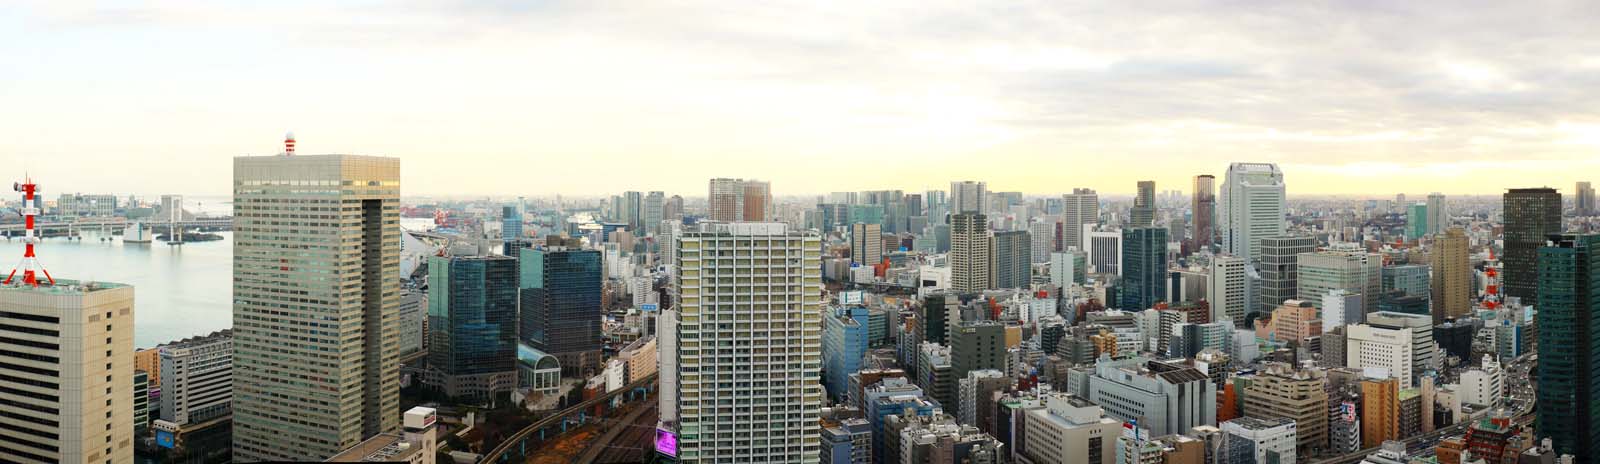 fotografia, material, livra, ajardine, imagine, proveja fotografia,Panorama de Tquio, construindo, A rea de centro da cidade, Tamachi, Odaiba